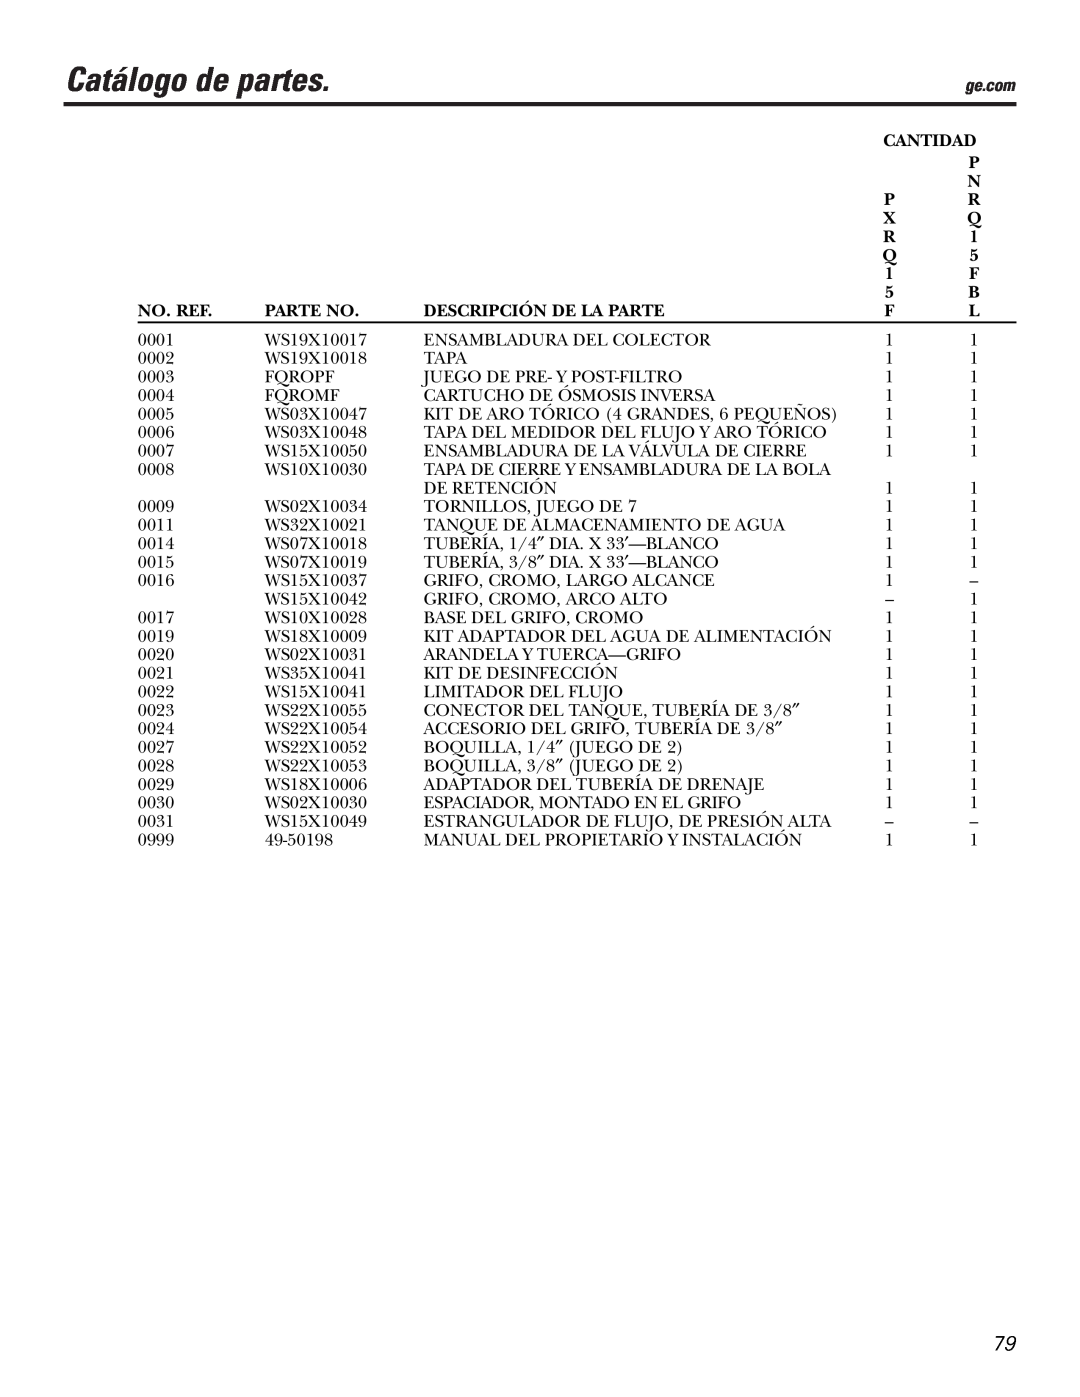 GE PXRQ15F owner manual Catálogo de partes 